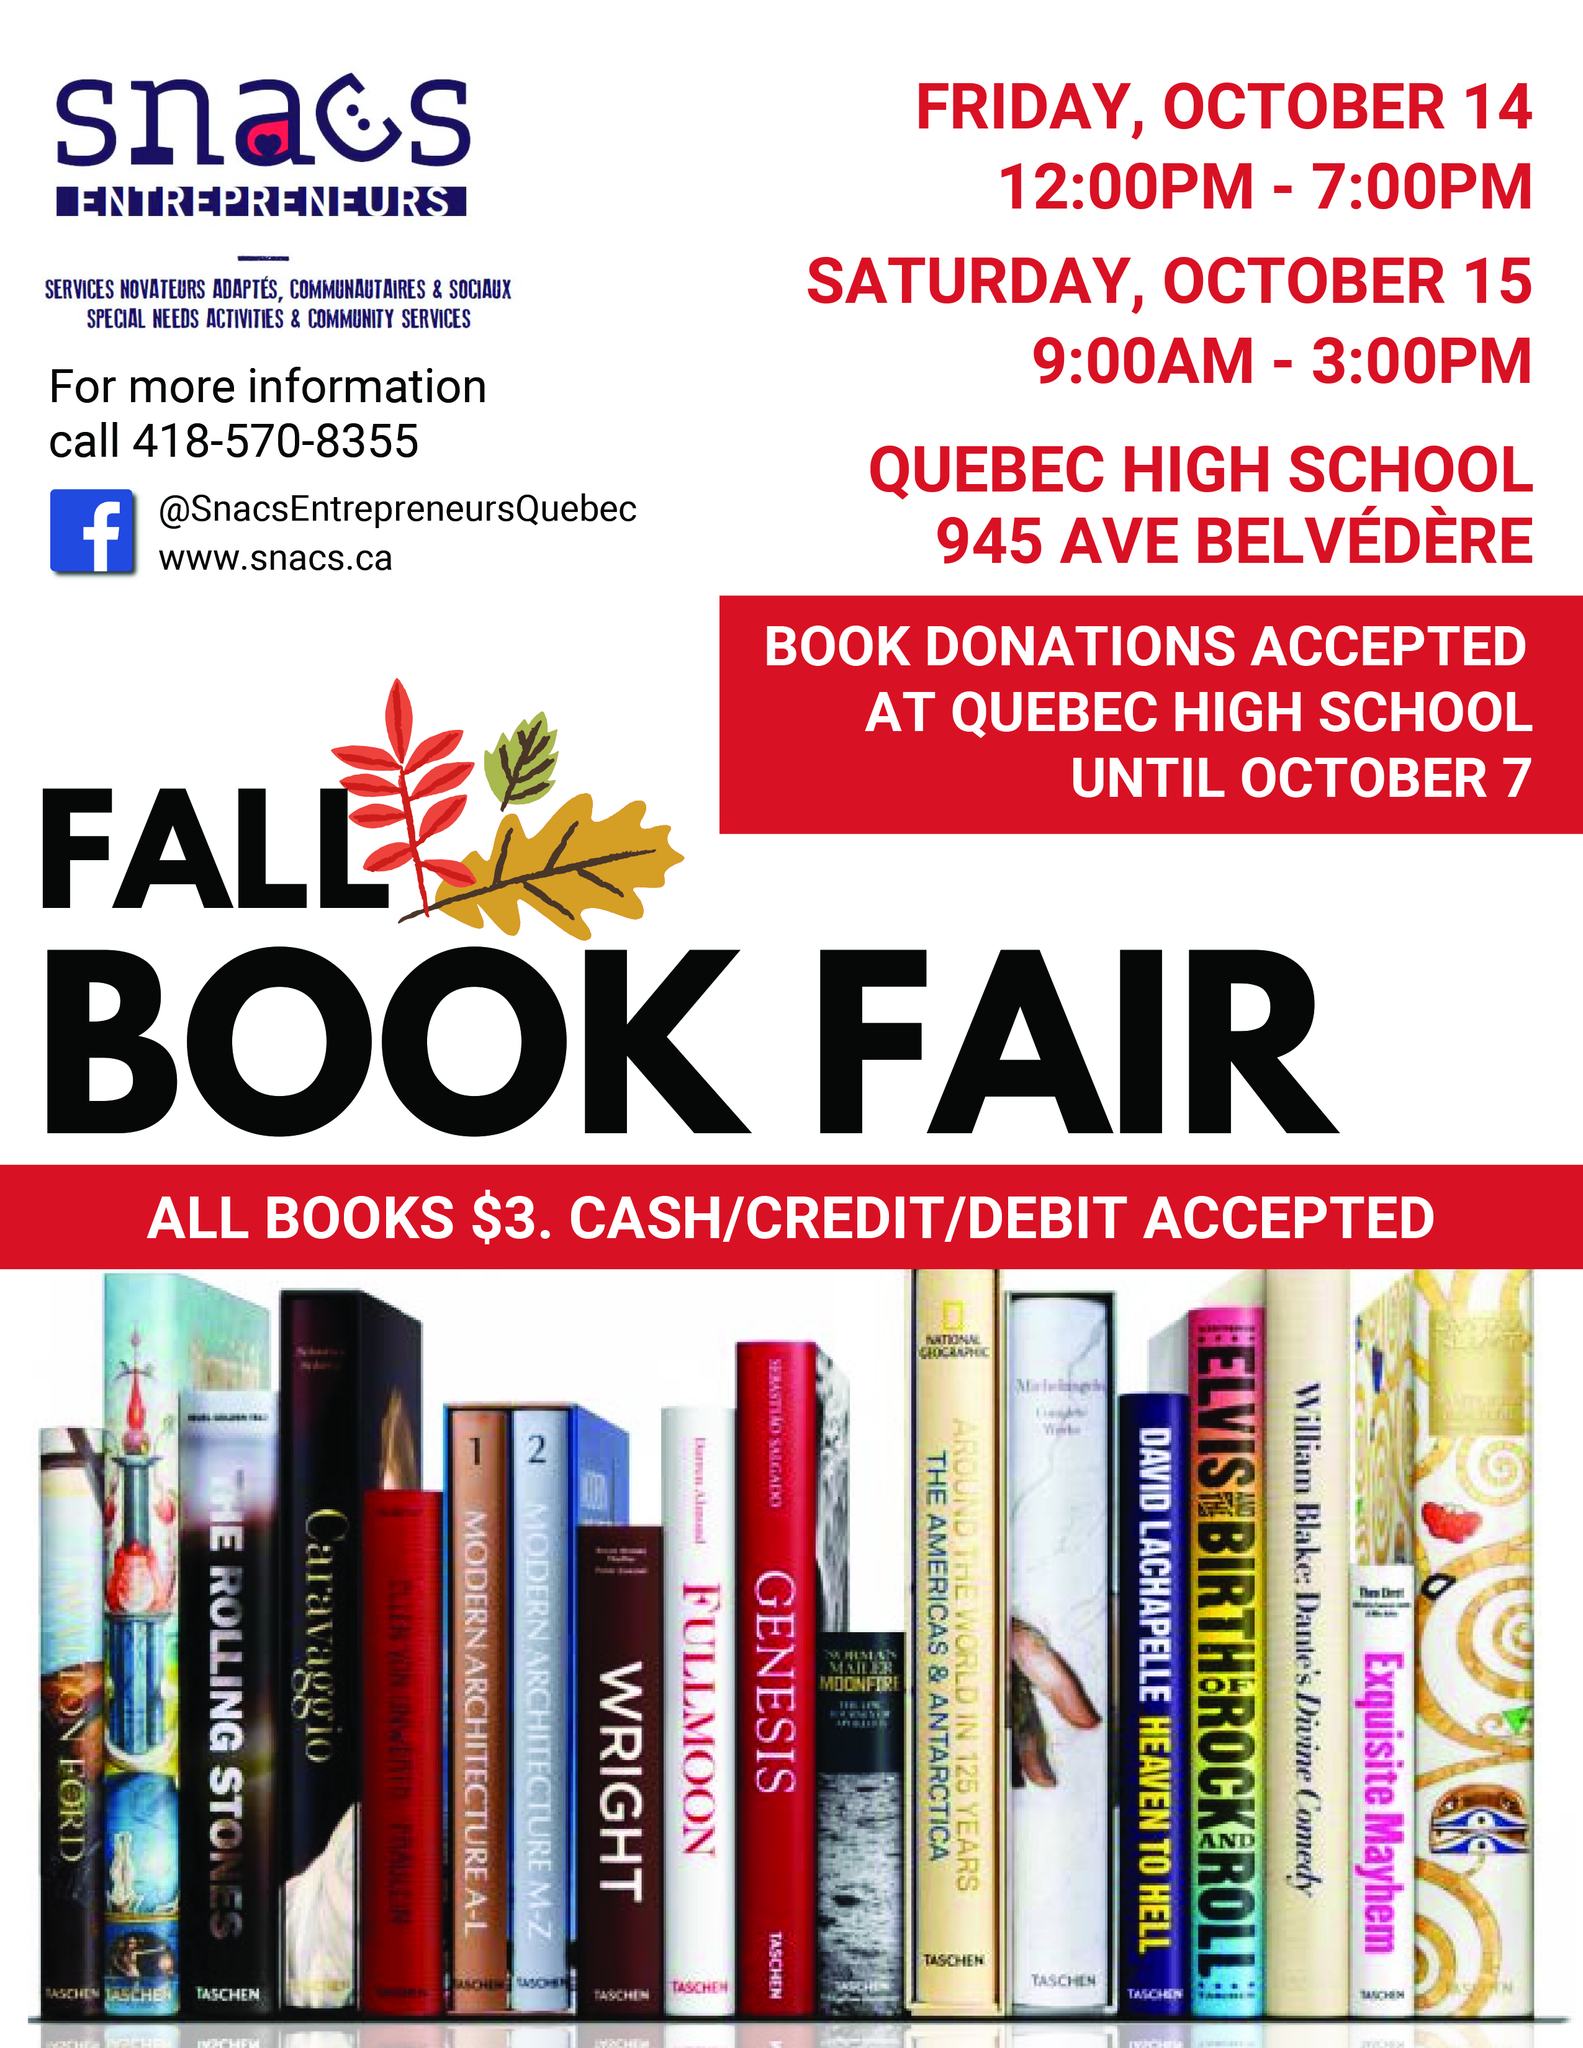 SNACS Book Fair @ Quebec High School